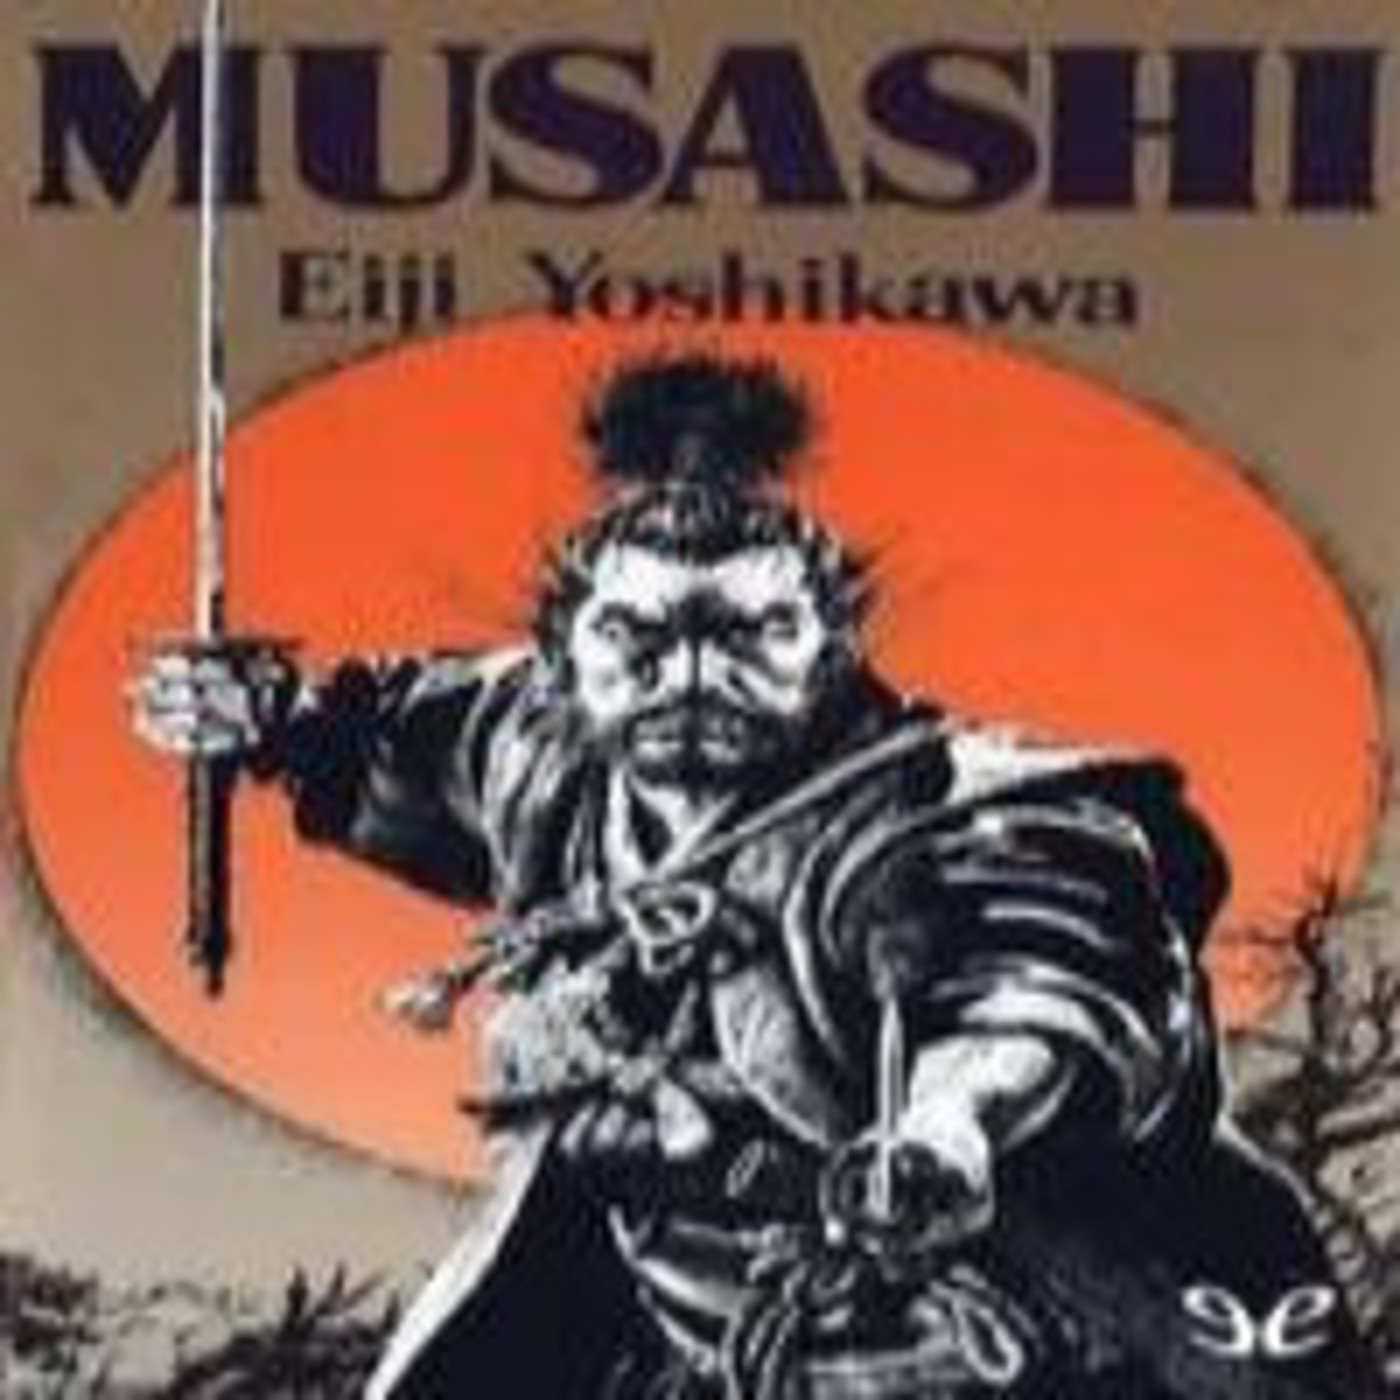 eiji yoshikawa musashi